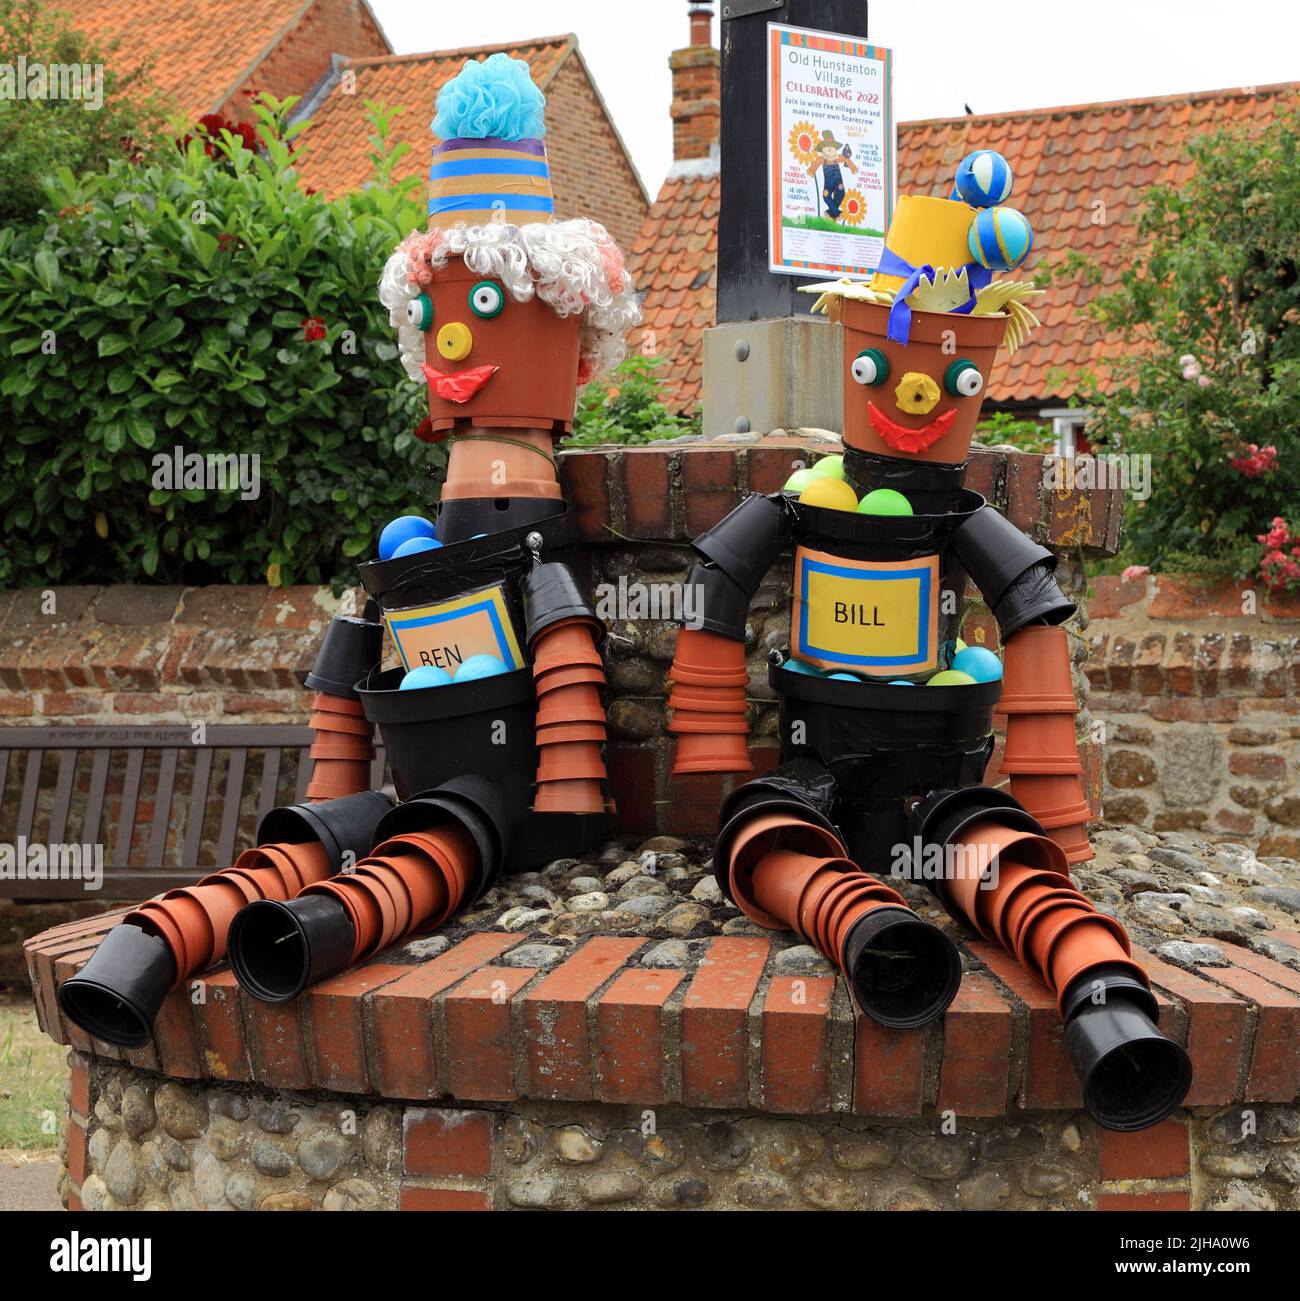 Bill et Ben, Flowerpot Men, décoration de festival, modèles, marionnettes, Old Hunstanton Village , Norfolk, Angleterre Banque D'Images